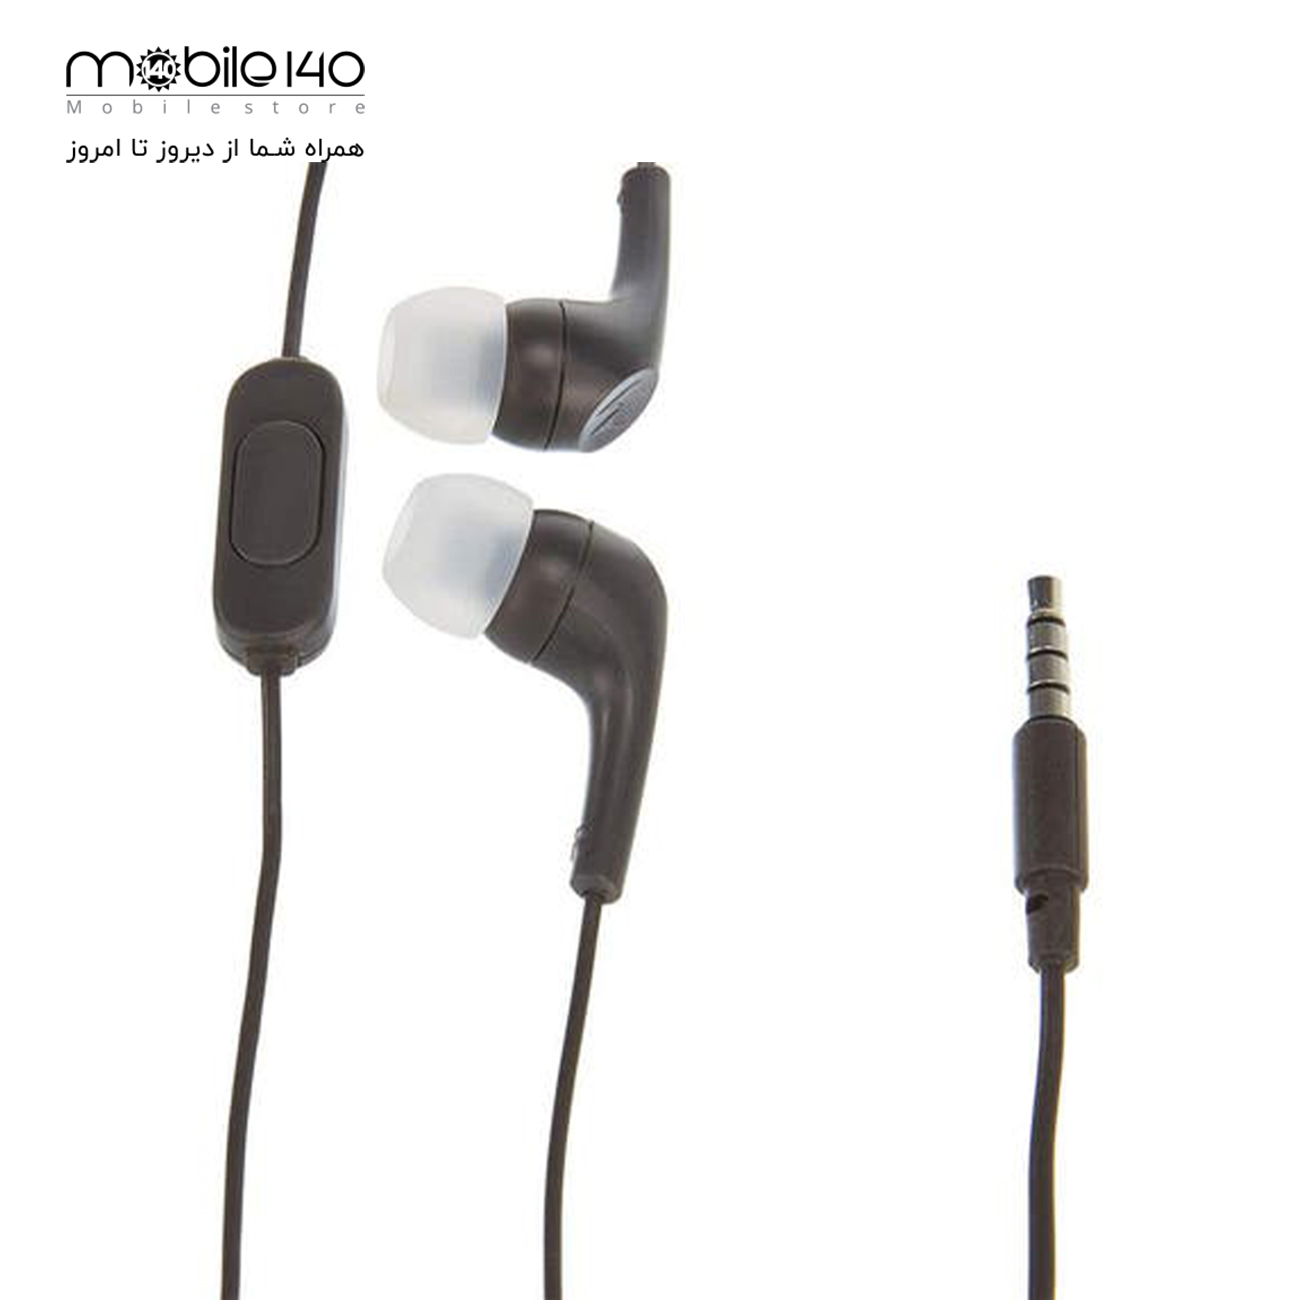 Motorola Earbuds 2 Headohones 1